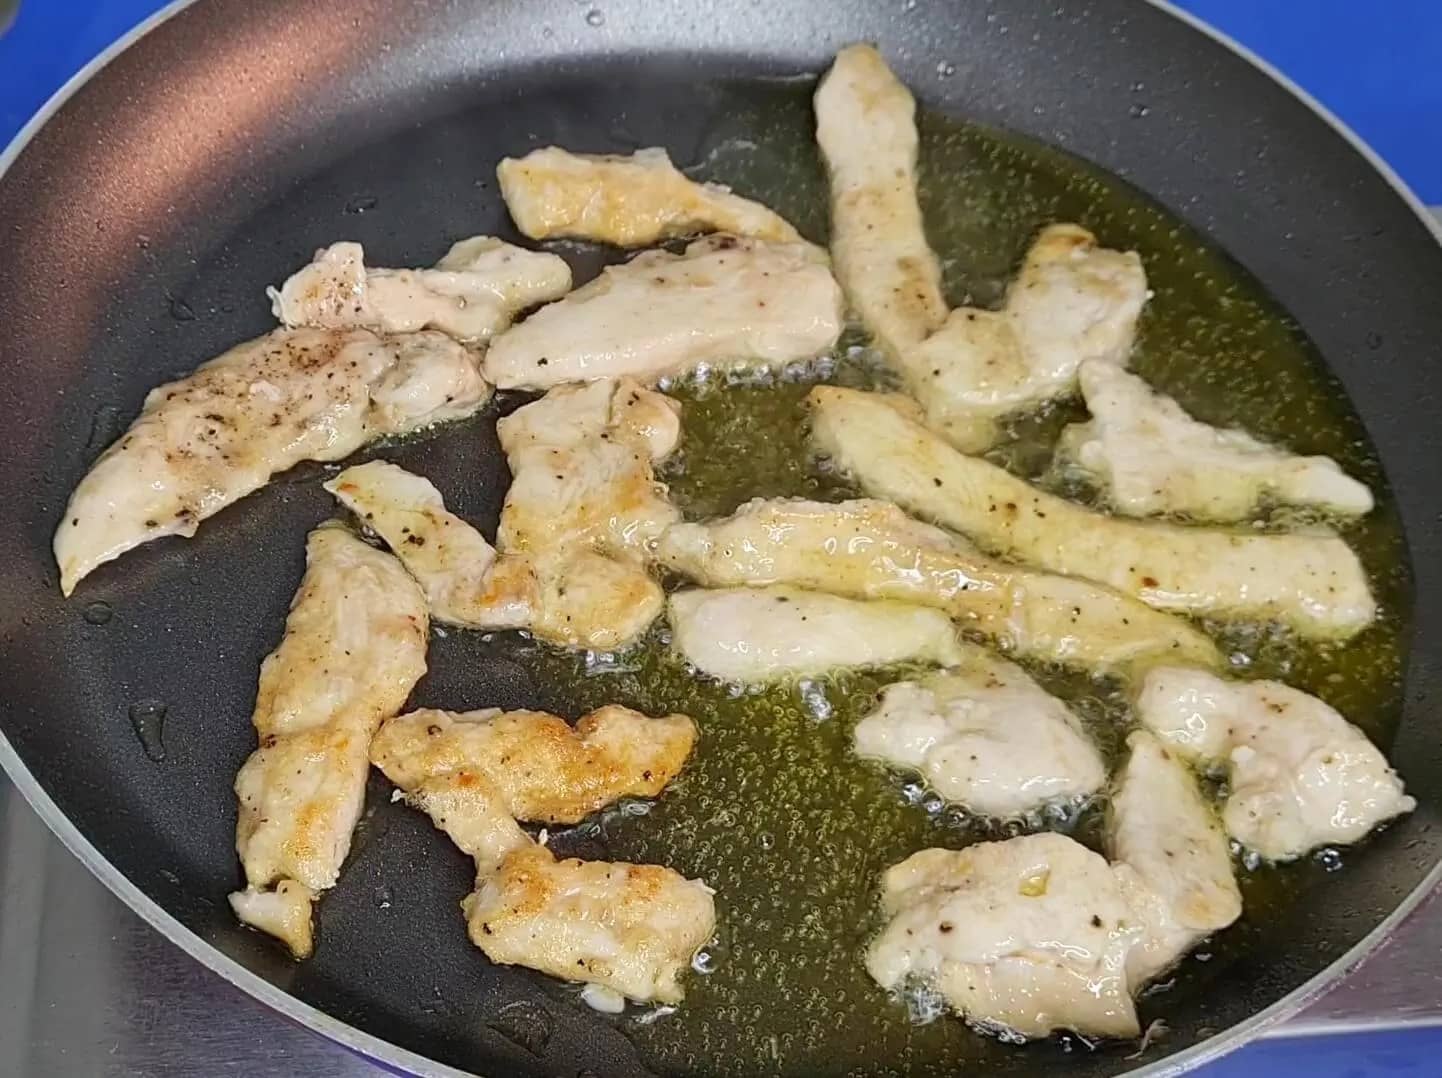 frying chicken